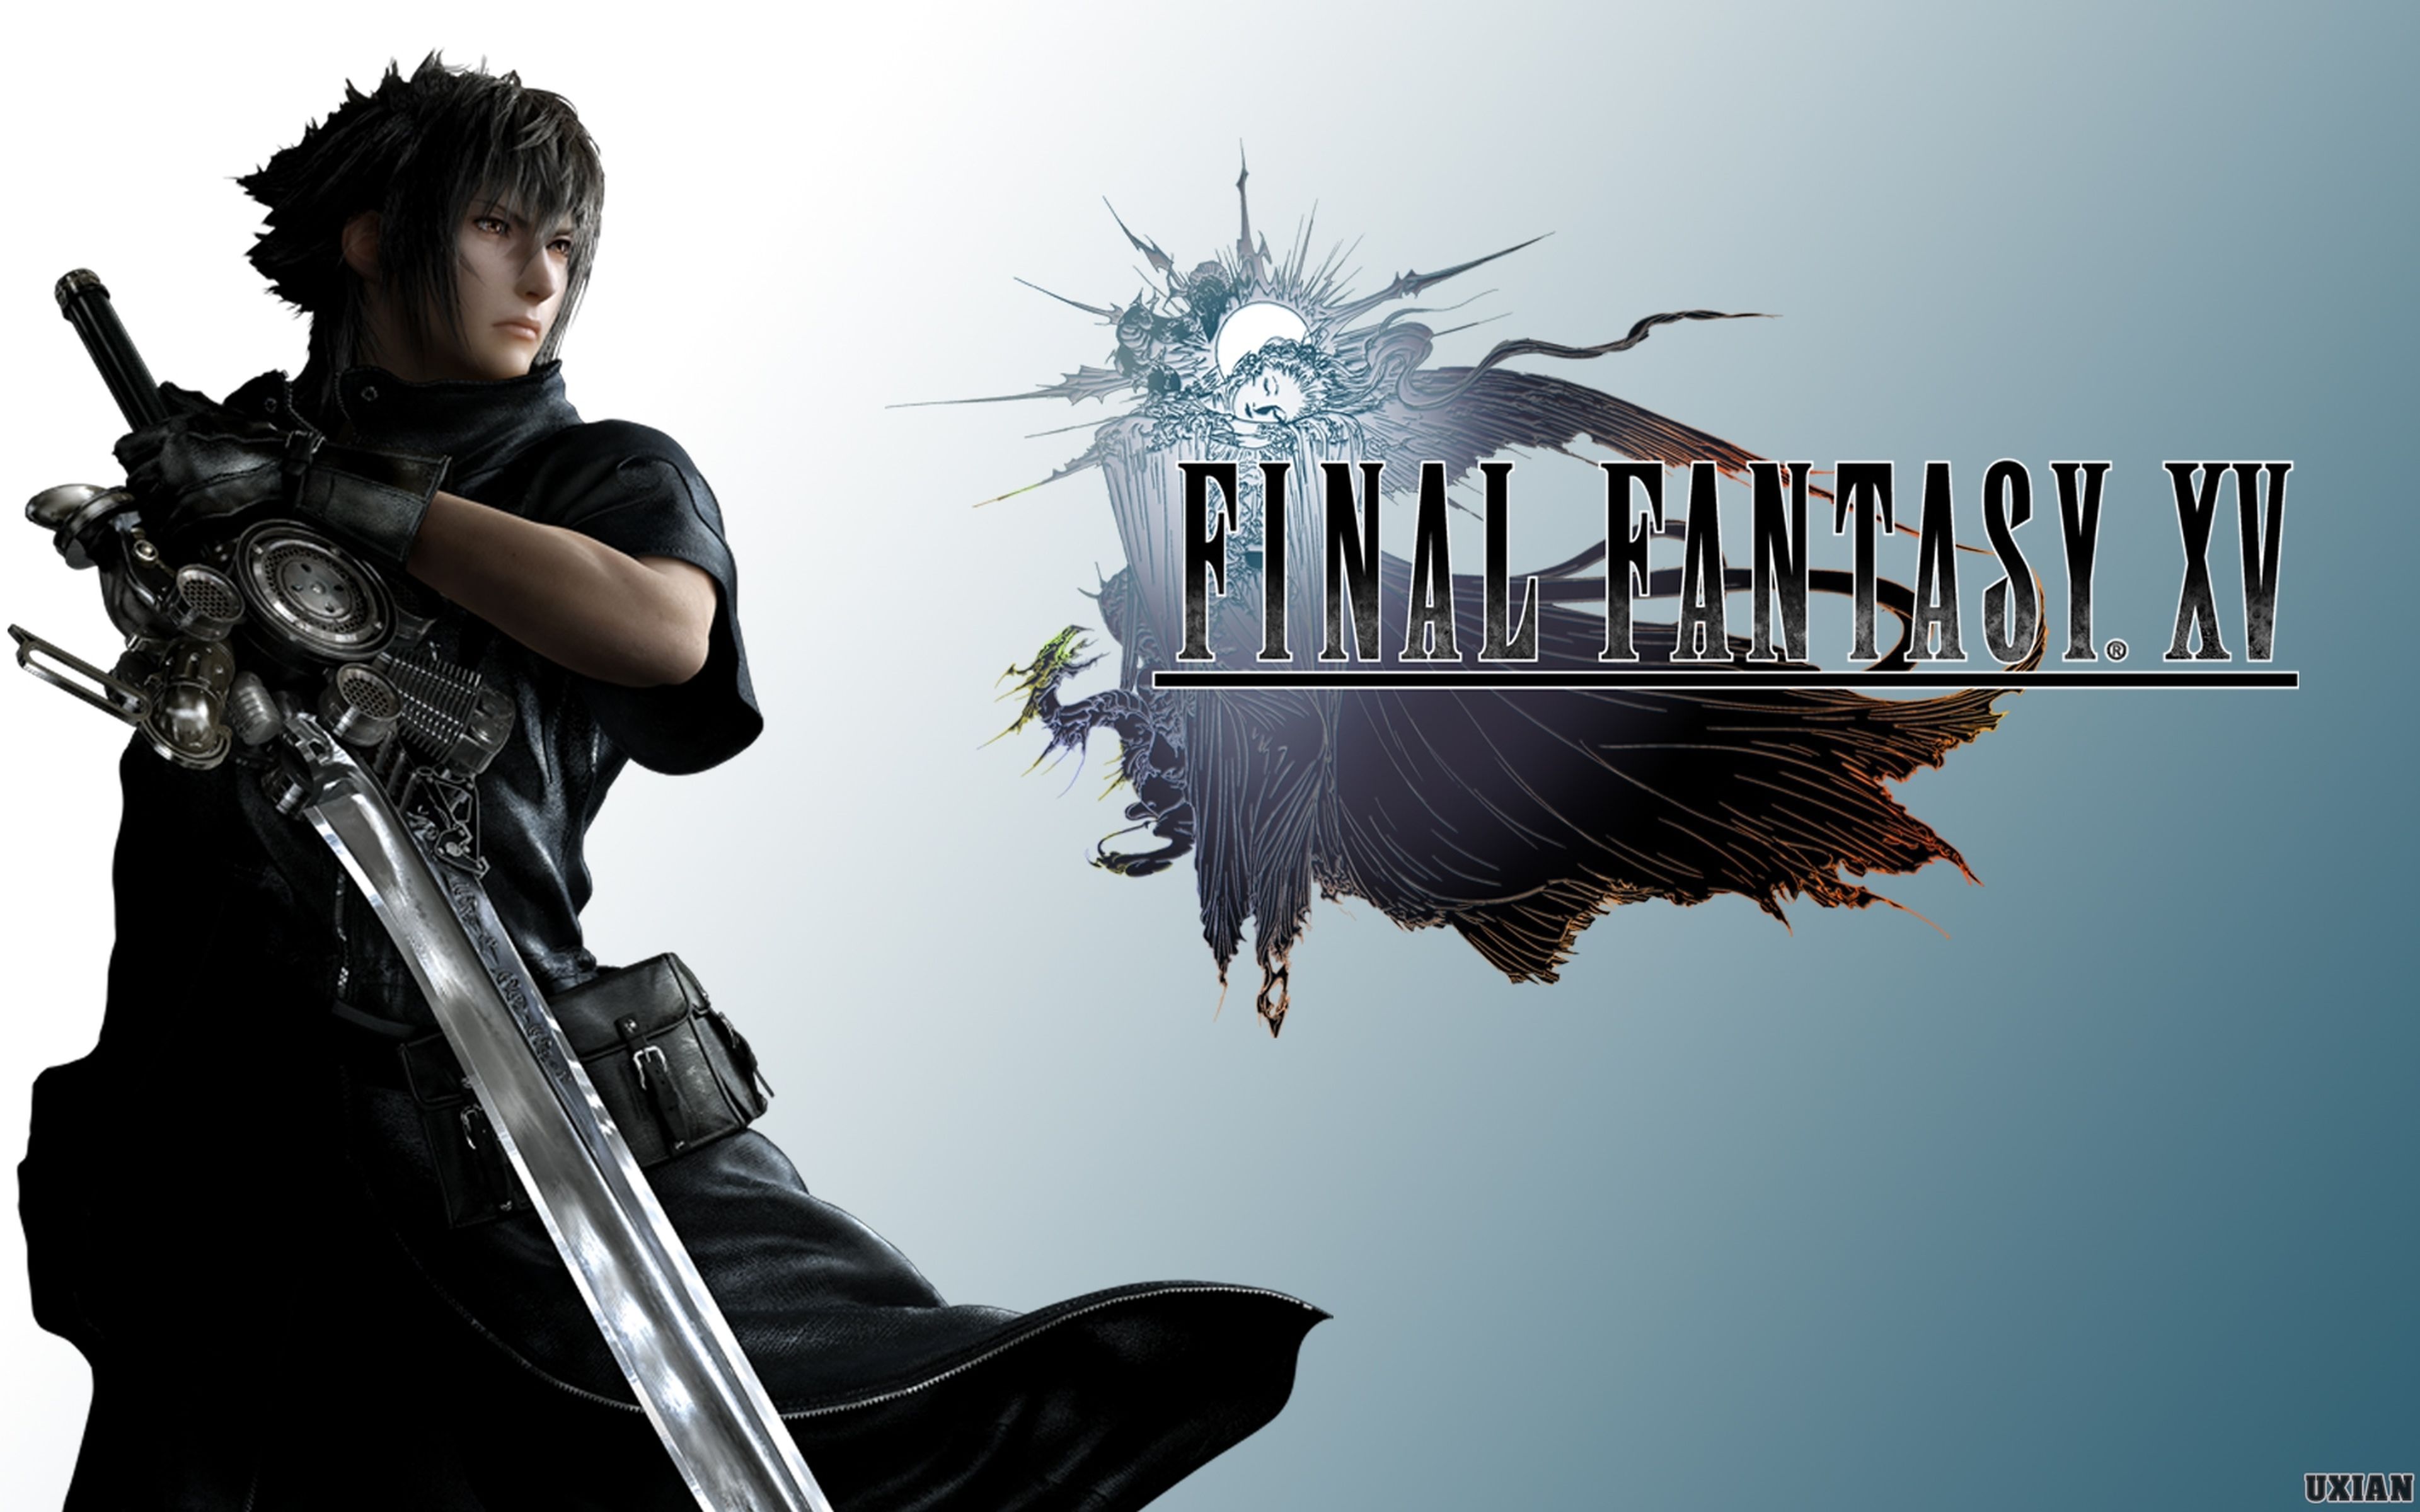 Final Fantasy XV y Kingdom Hearts III no estarán presentes en el Tokyo Game Show